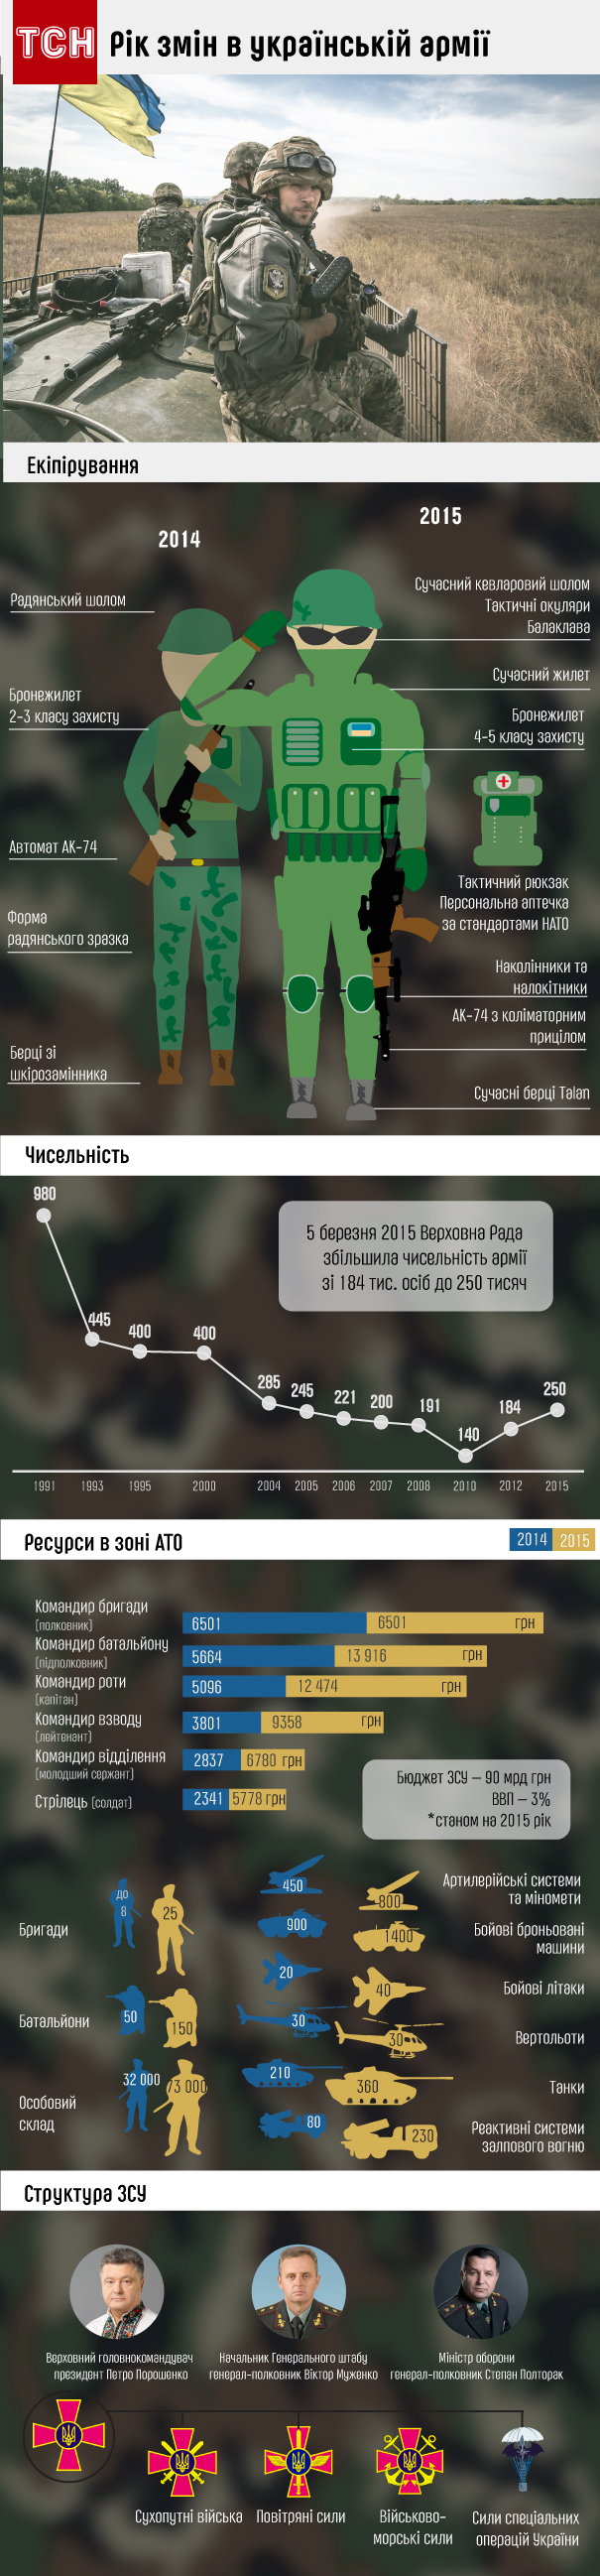 Які зміни зазнала українська армія упродовж року (ІНФОГРАФІКА) - фото 1